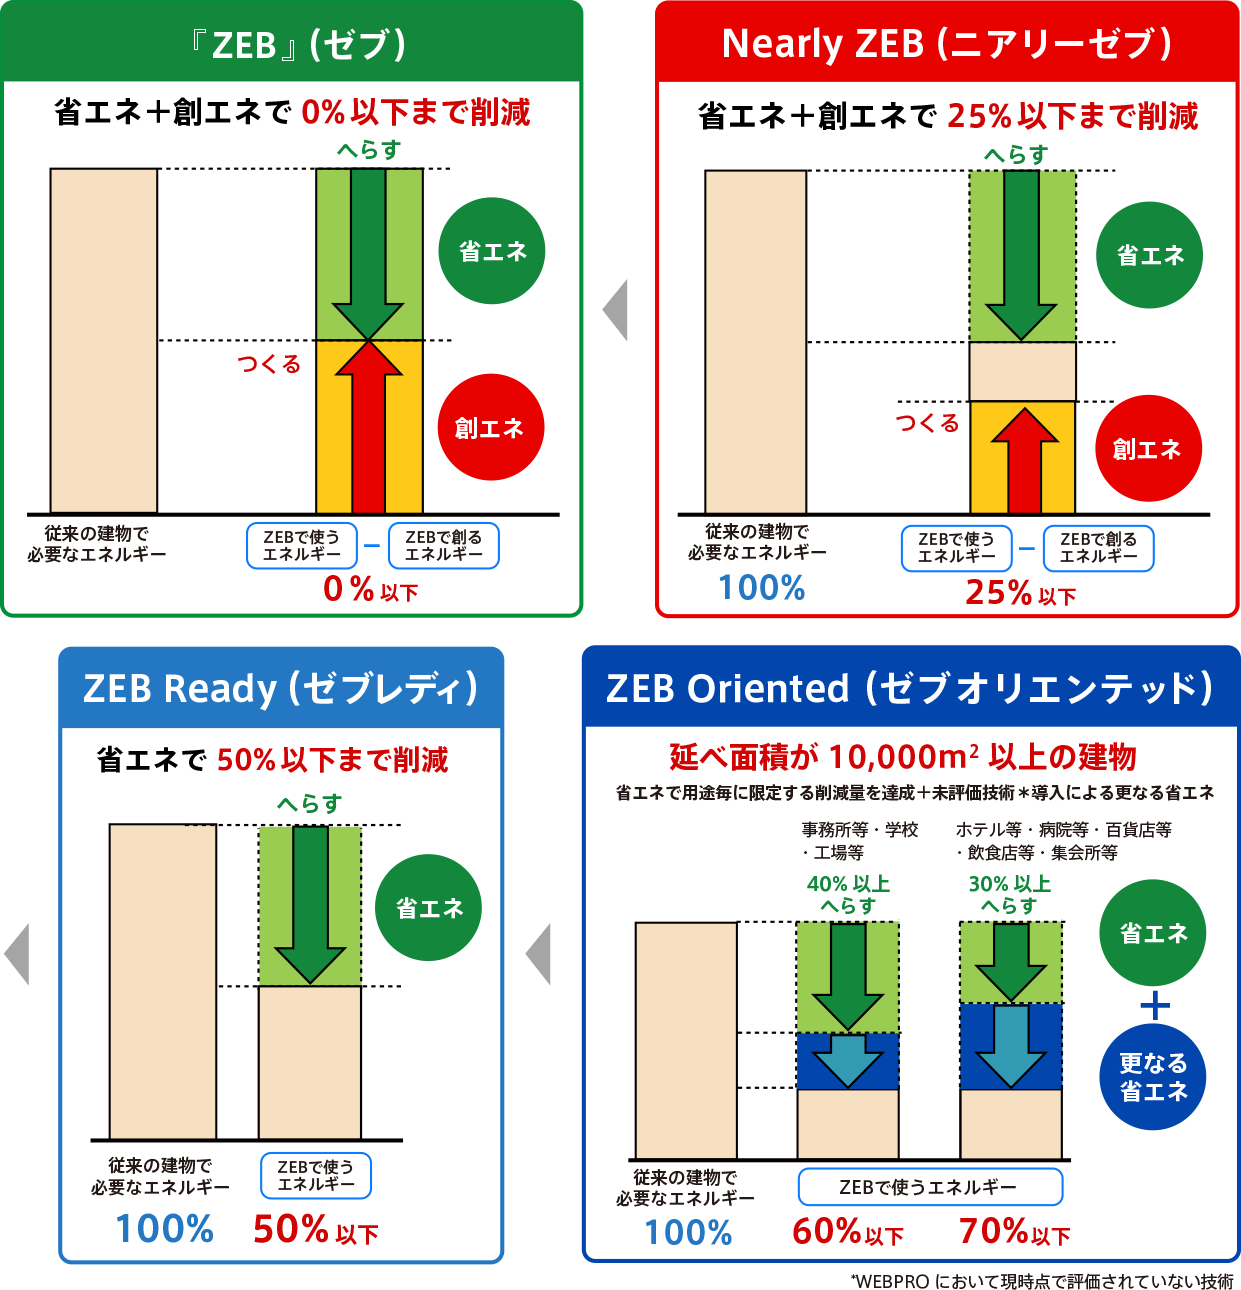 ゼロエネルギーの達成状況に応じて定義される4段階のZEBシリーズの画像